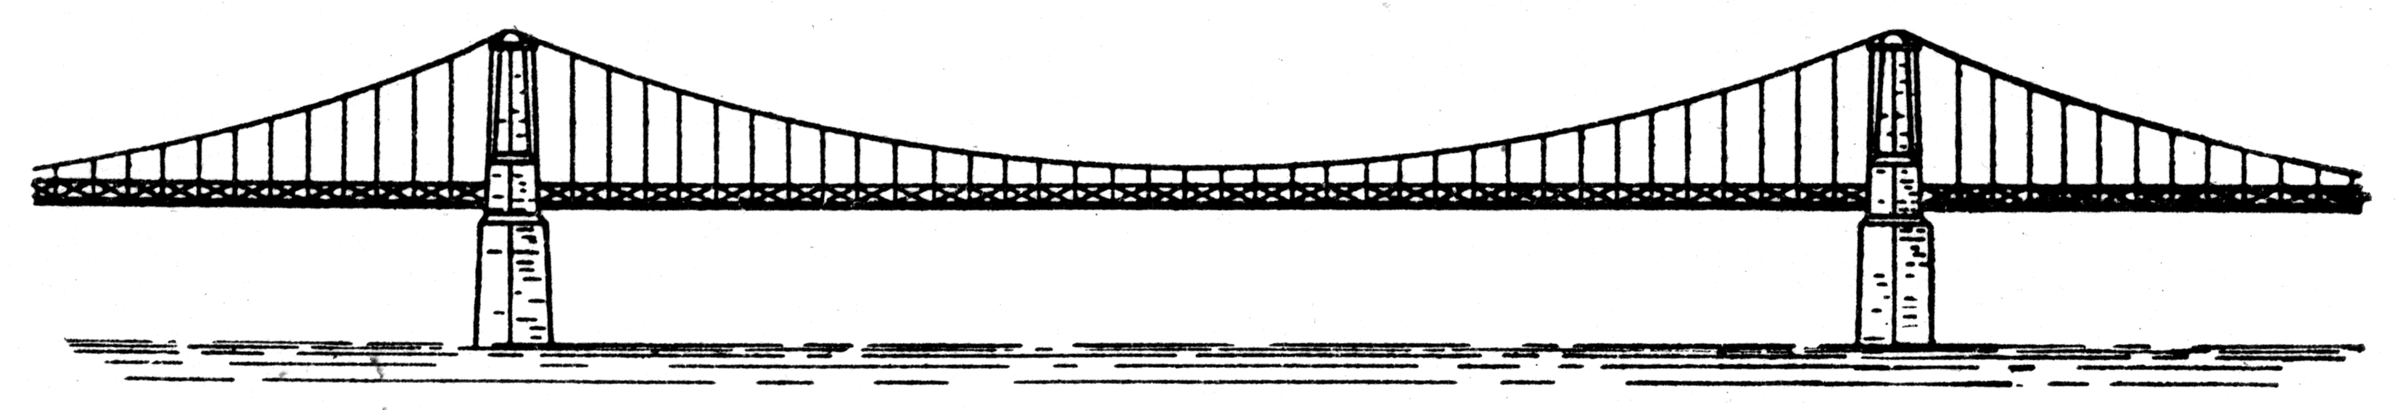 Bridge Suspension